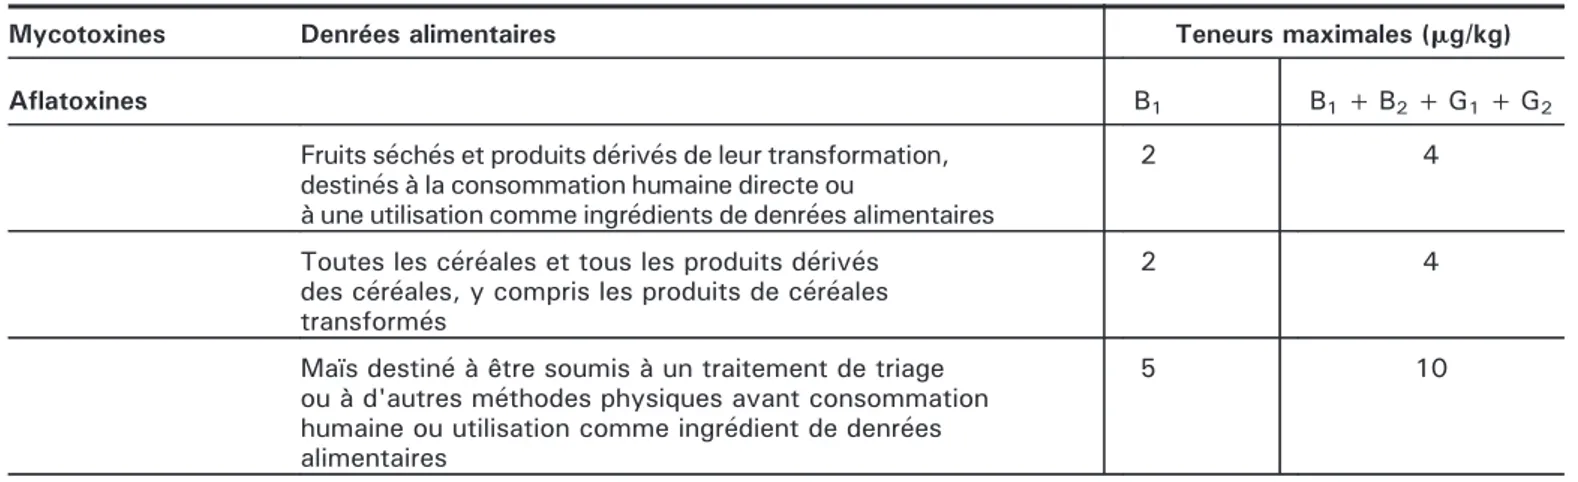 Tableau 5. Teneurs maximales pour certaines mycotoxines dans des denrées alimentaires selon les réglementations de la commission européenne (CE105/2010, 1126/2007, 1881/2006).